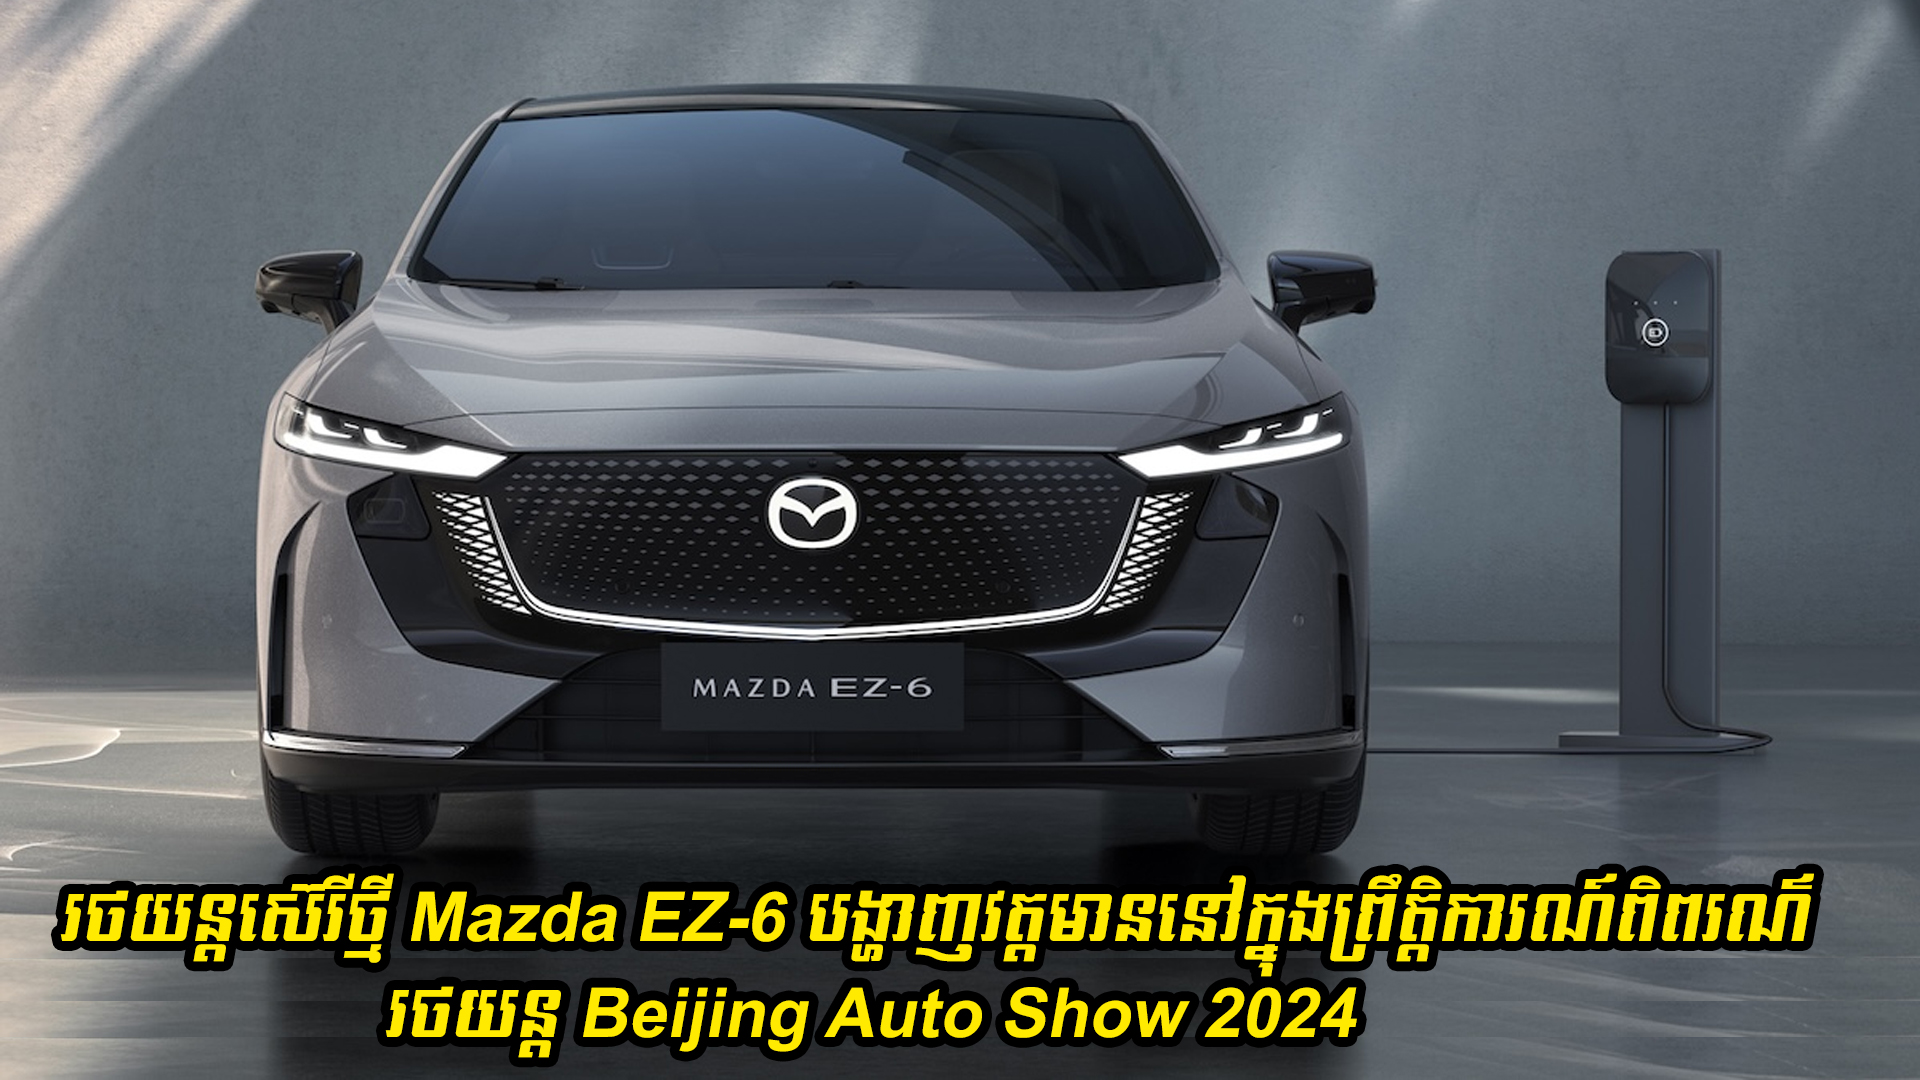 រថយន្តស៊េរីថ្មី Mazda EZ-6 បានបង្ហាញវត្តមាននៅក្នុងព្រឹត្តិការណ៍ពិព័រណ៌រថយន្ត Beijing Auto Show 2024